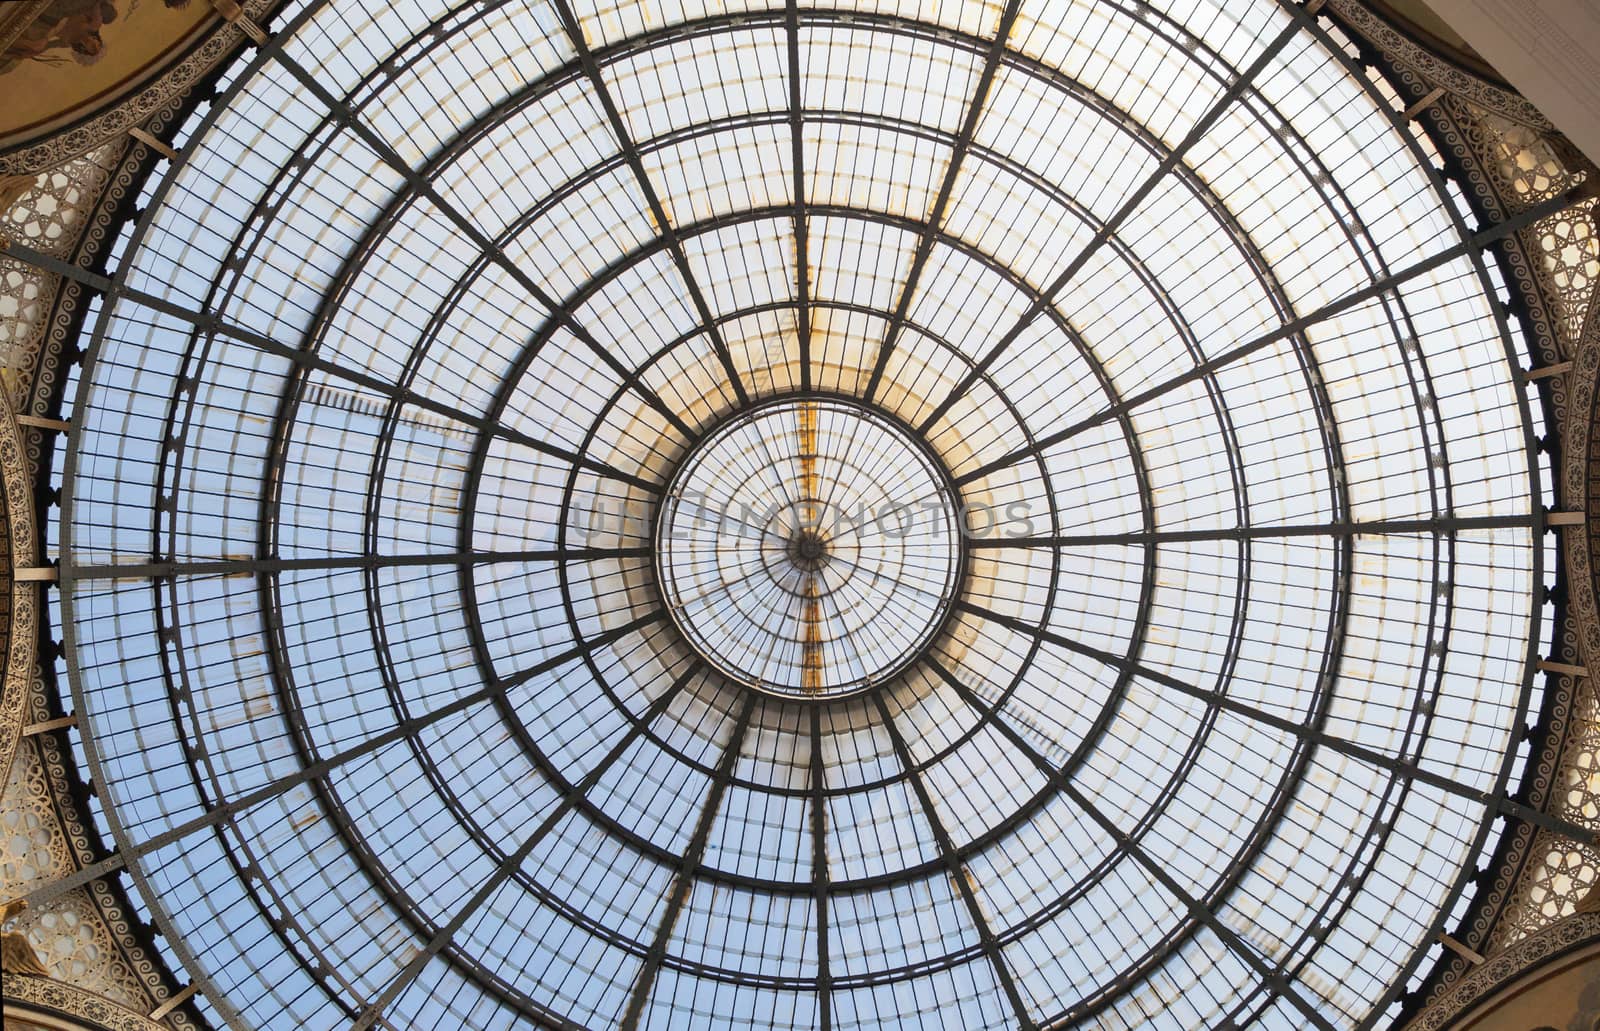 ITALY, MILAN - SEPTEMBER 27, 2014 - Ceiling of galleria Vittorio Emanuele II in Milan